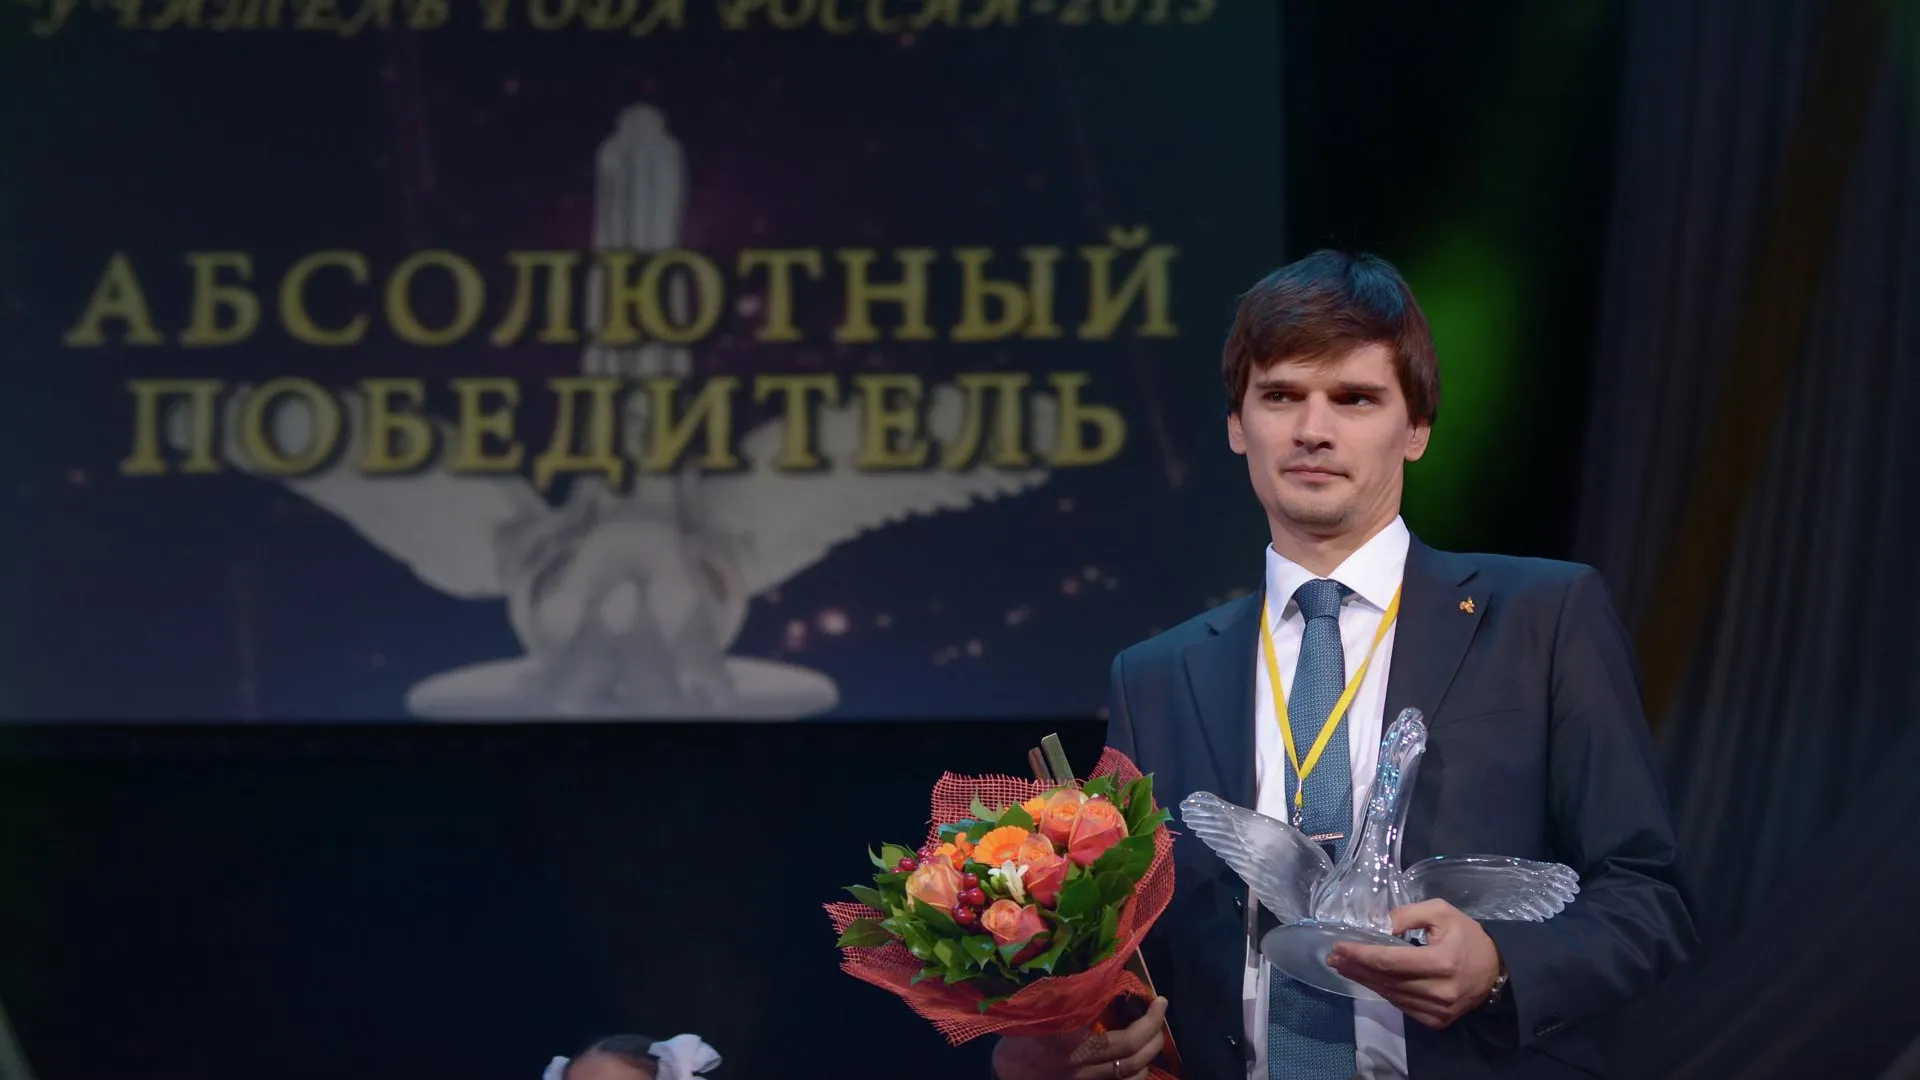 Юбилейный конкурс «Учитель года России» пройдет осенью в Мытищах